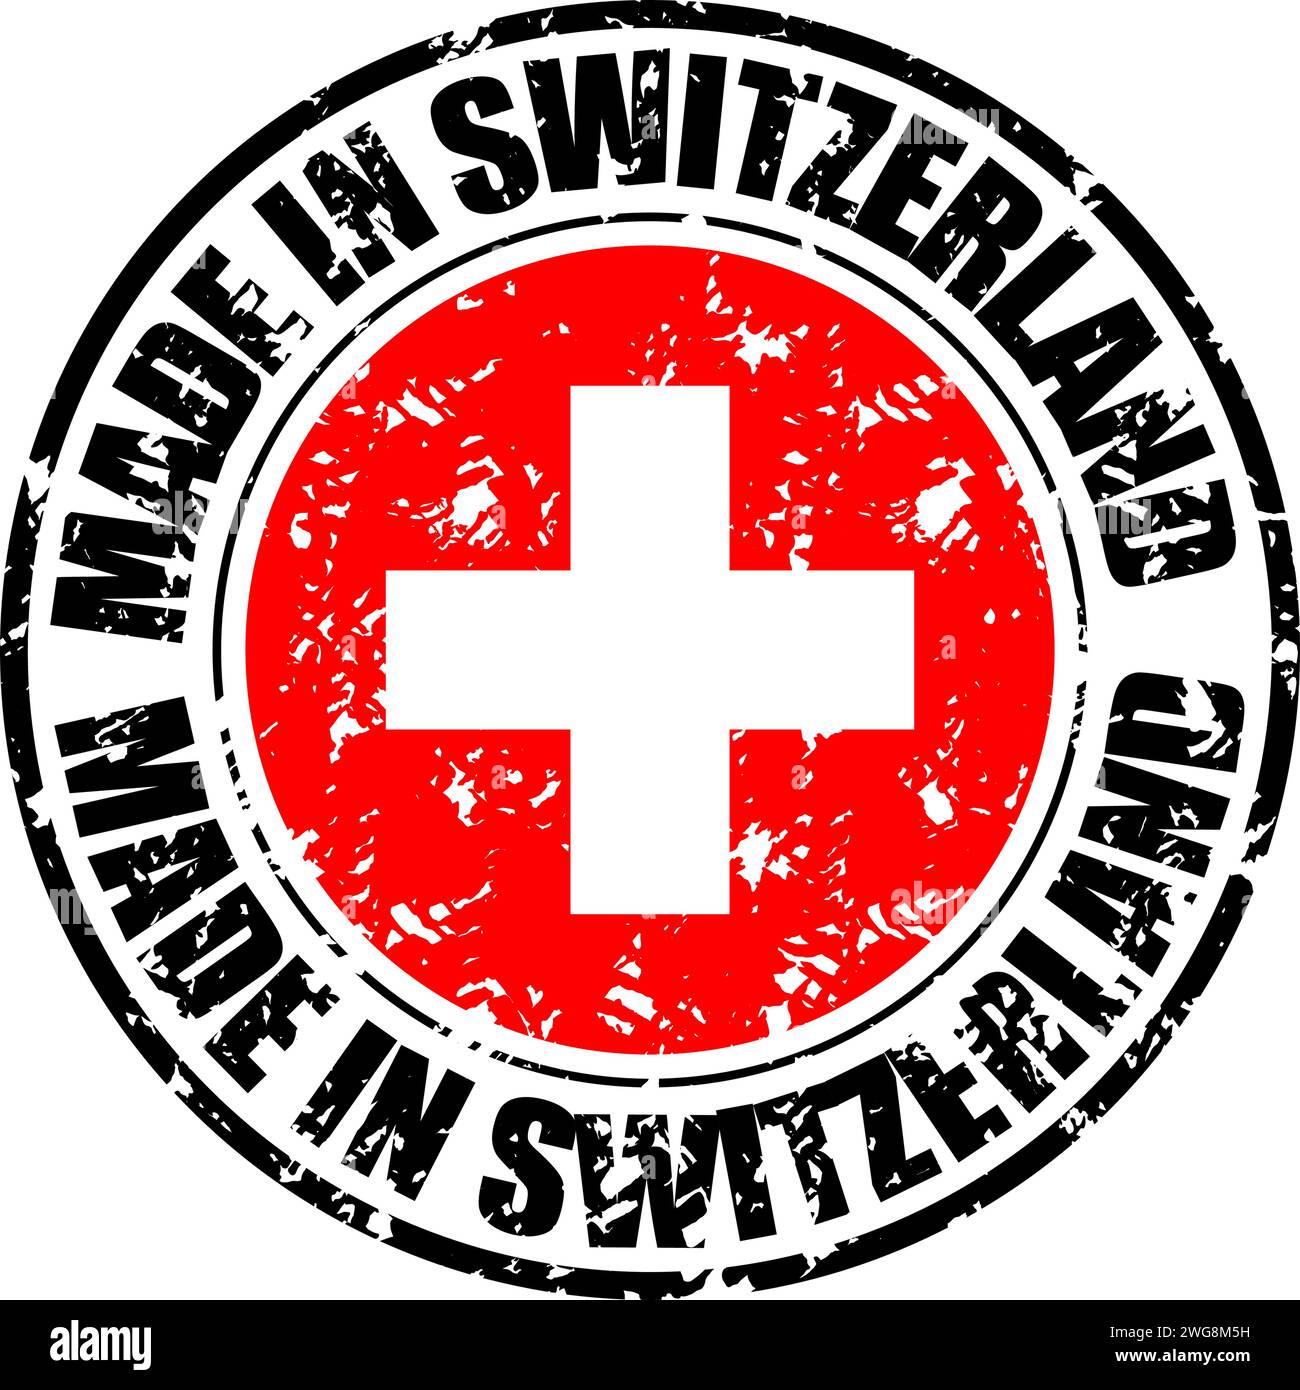 Stampa del timbro di gomma realizzato in svizzera. Vettore di insegne adesive, illustrazione del simbolo di garanzia, banner con etichetta, esportazione filigrana, swi del paese Illustrazione Vettoriale